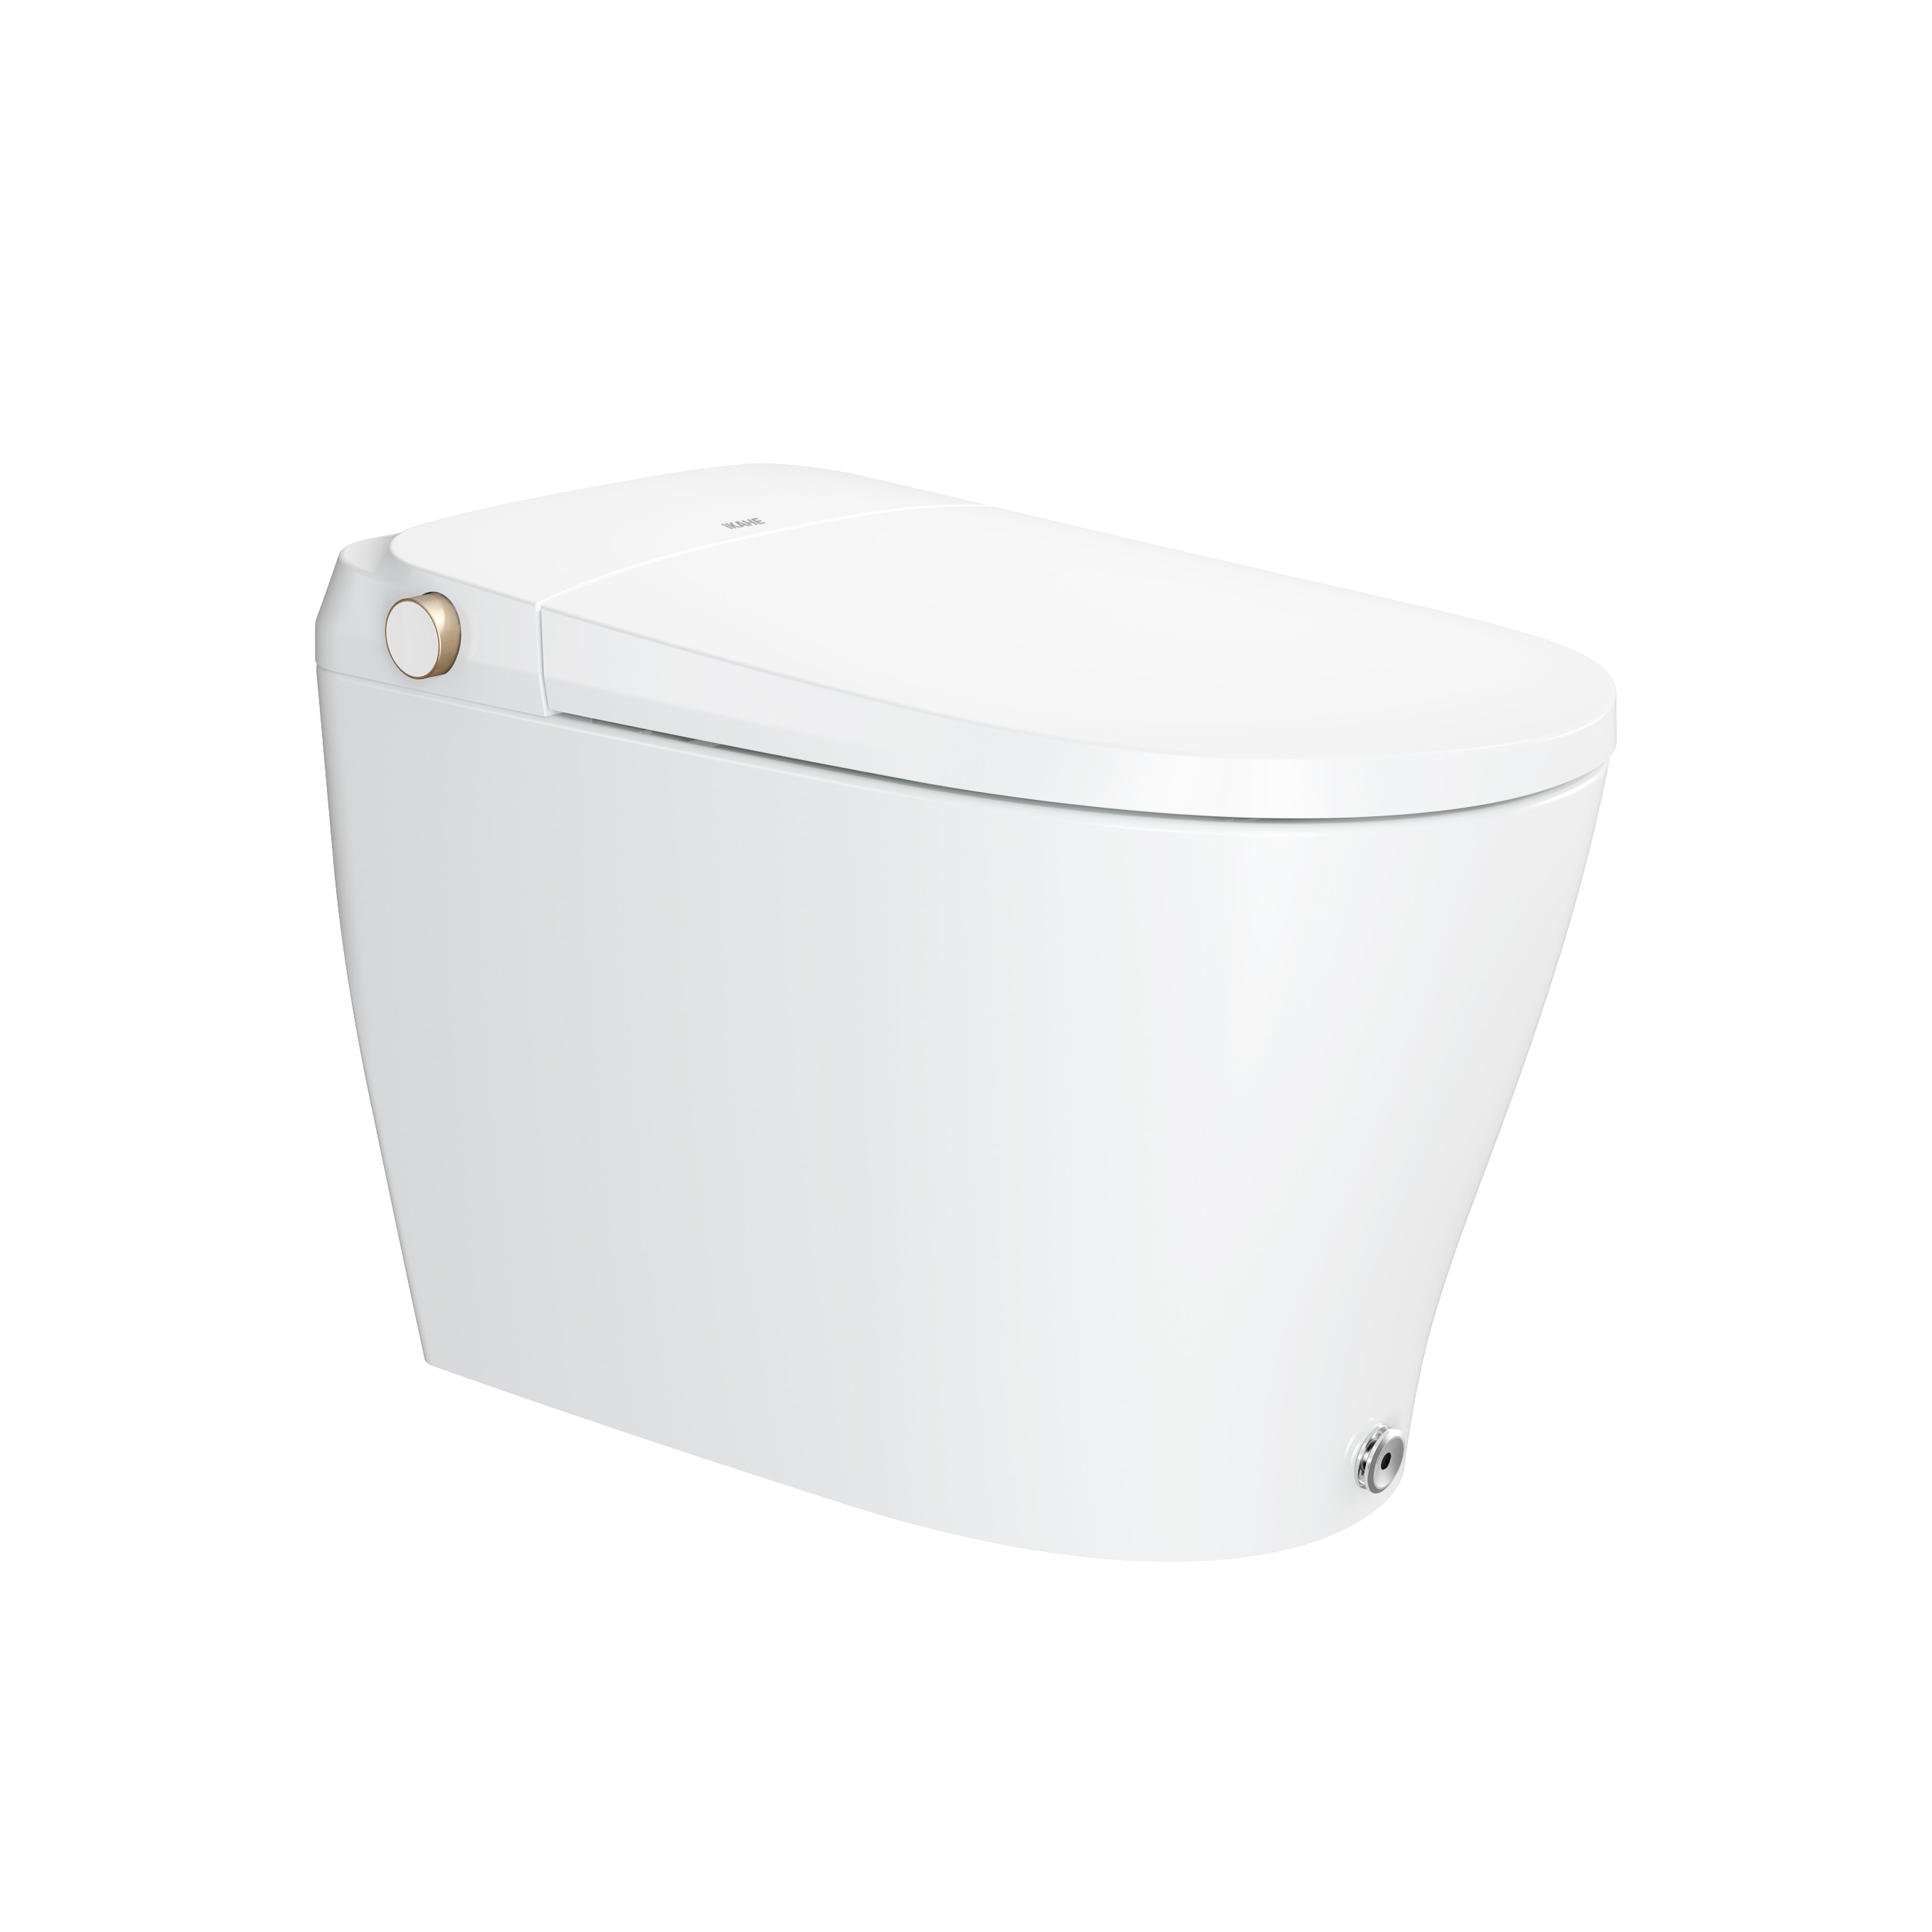 Lux Pro Smart Toilet